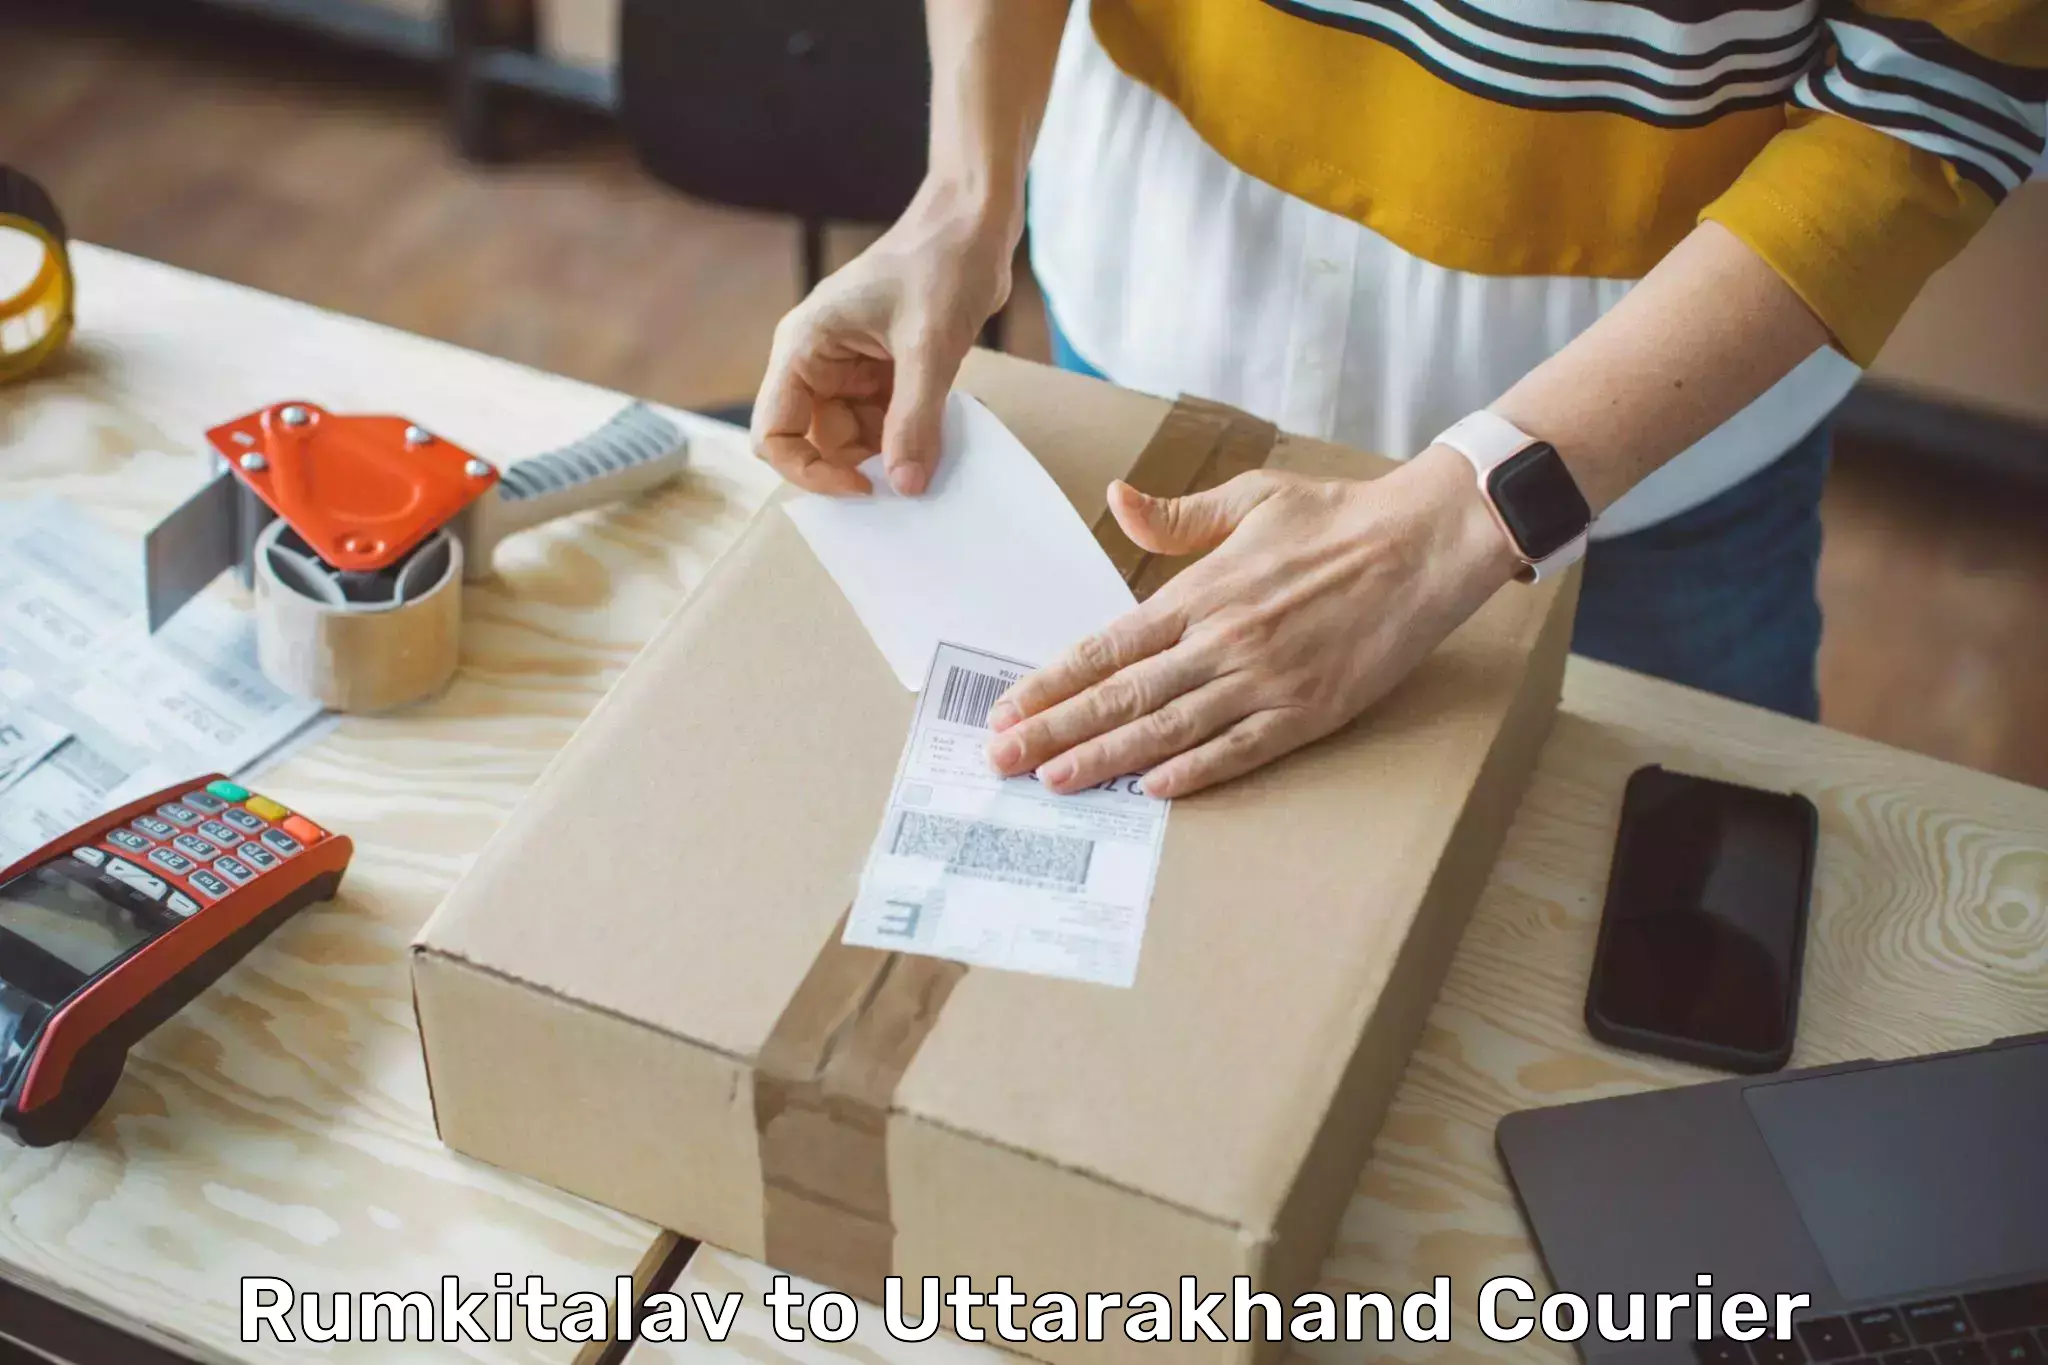 State-of-the-art courier technology Rumkitalav to Uttarakhand